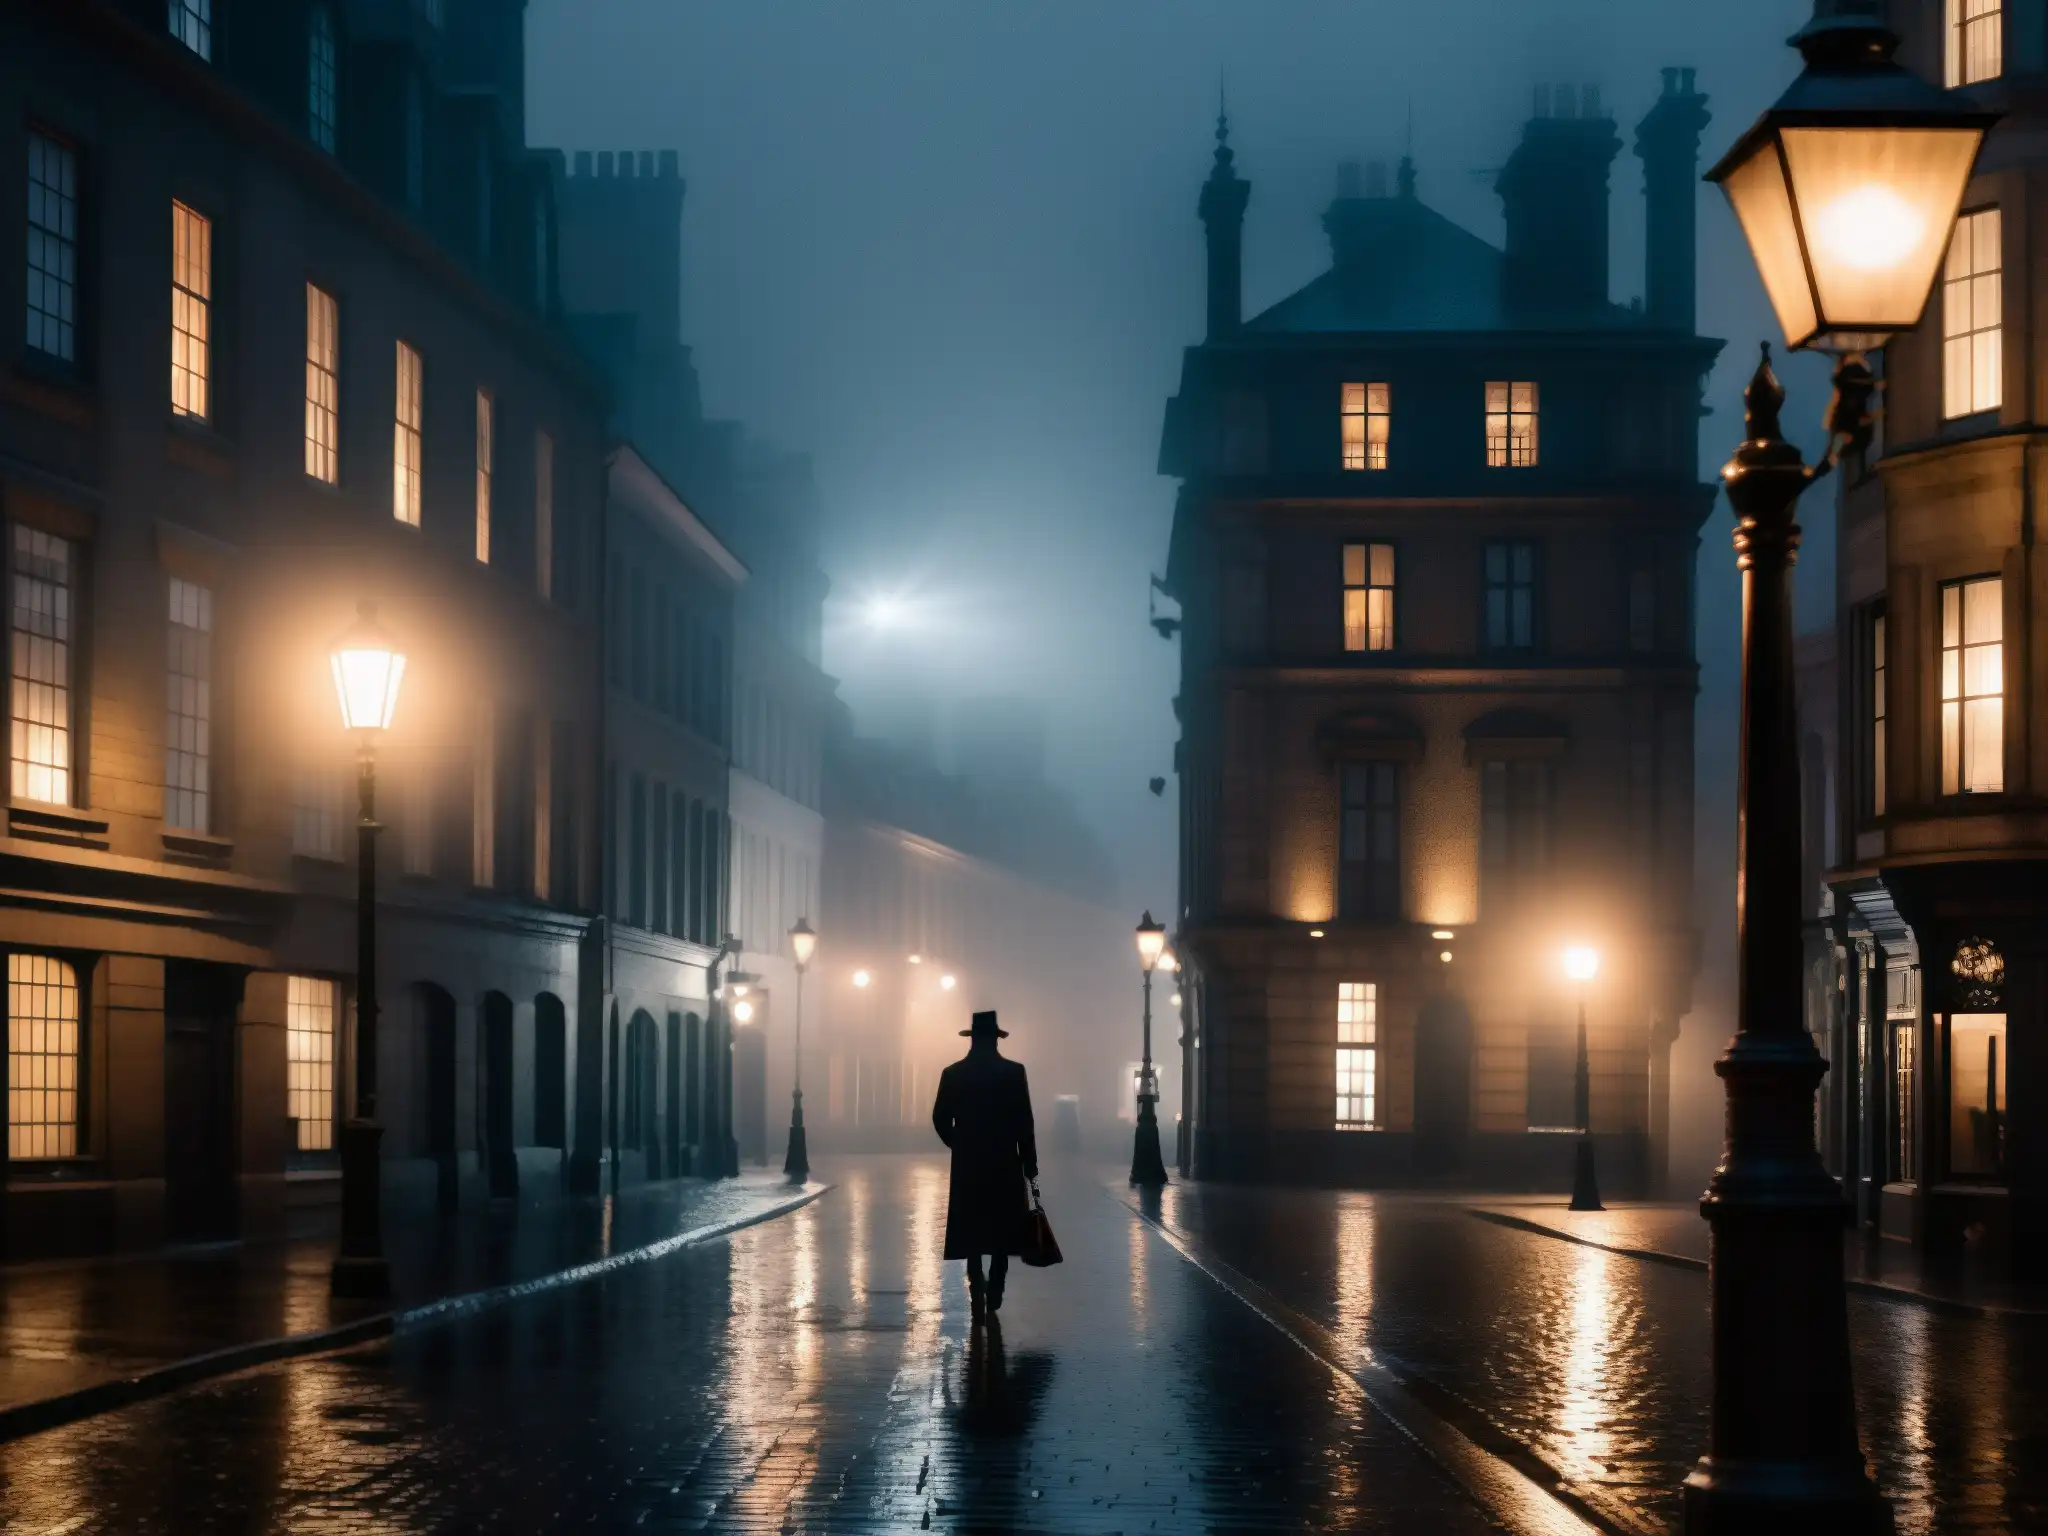 Un paisaje urbano oscuro y misterioso, con una figura sombría y niebla alrededor de una farola